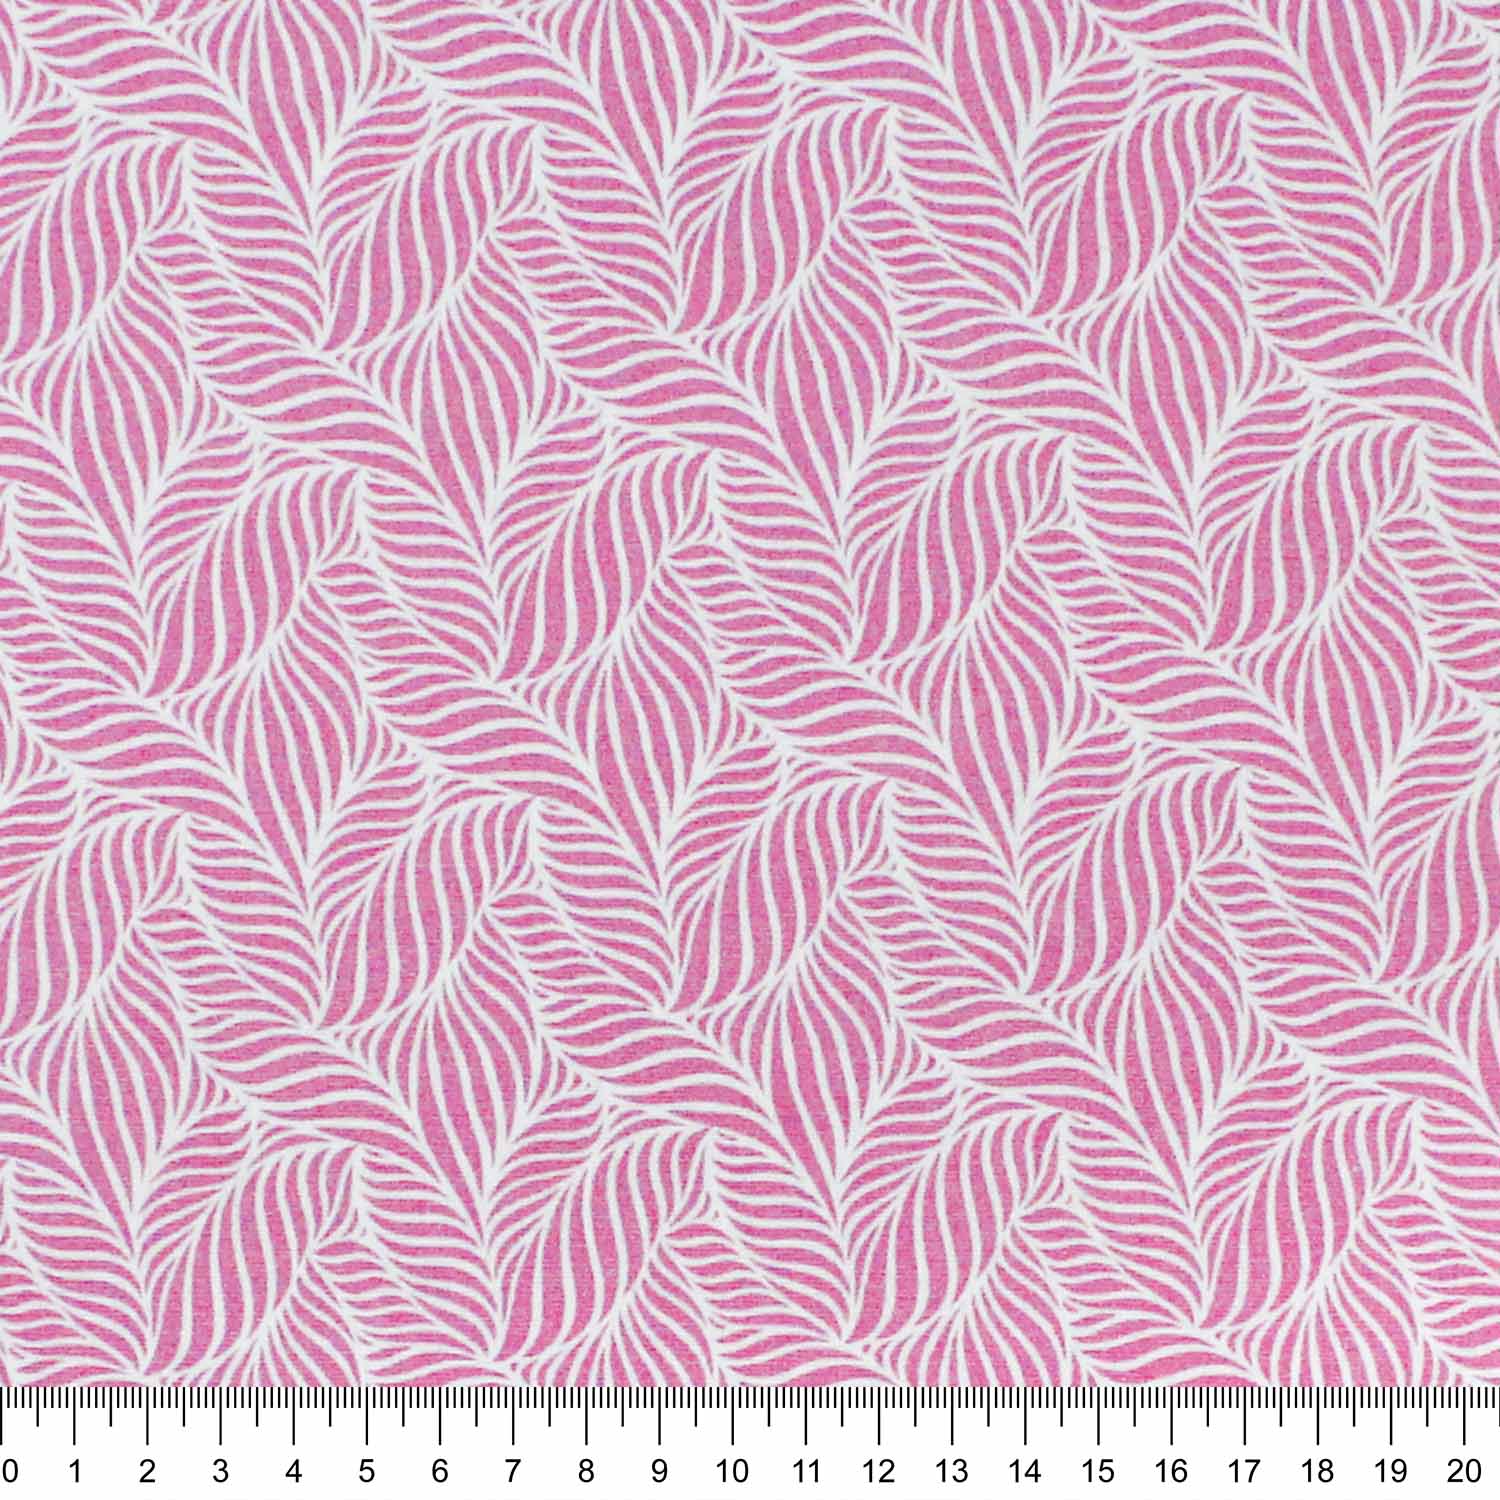 tecido-tricoline-textura-folha-rosa-della-aviamentos-10947_1